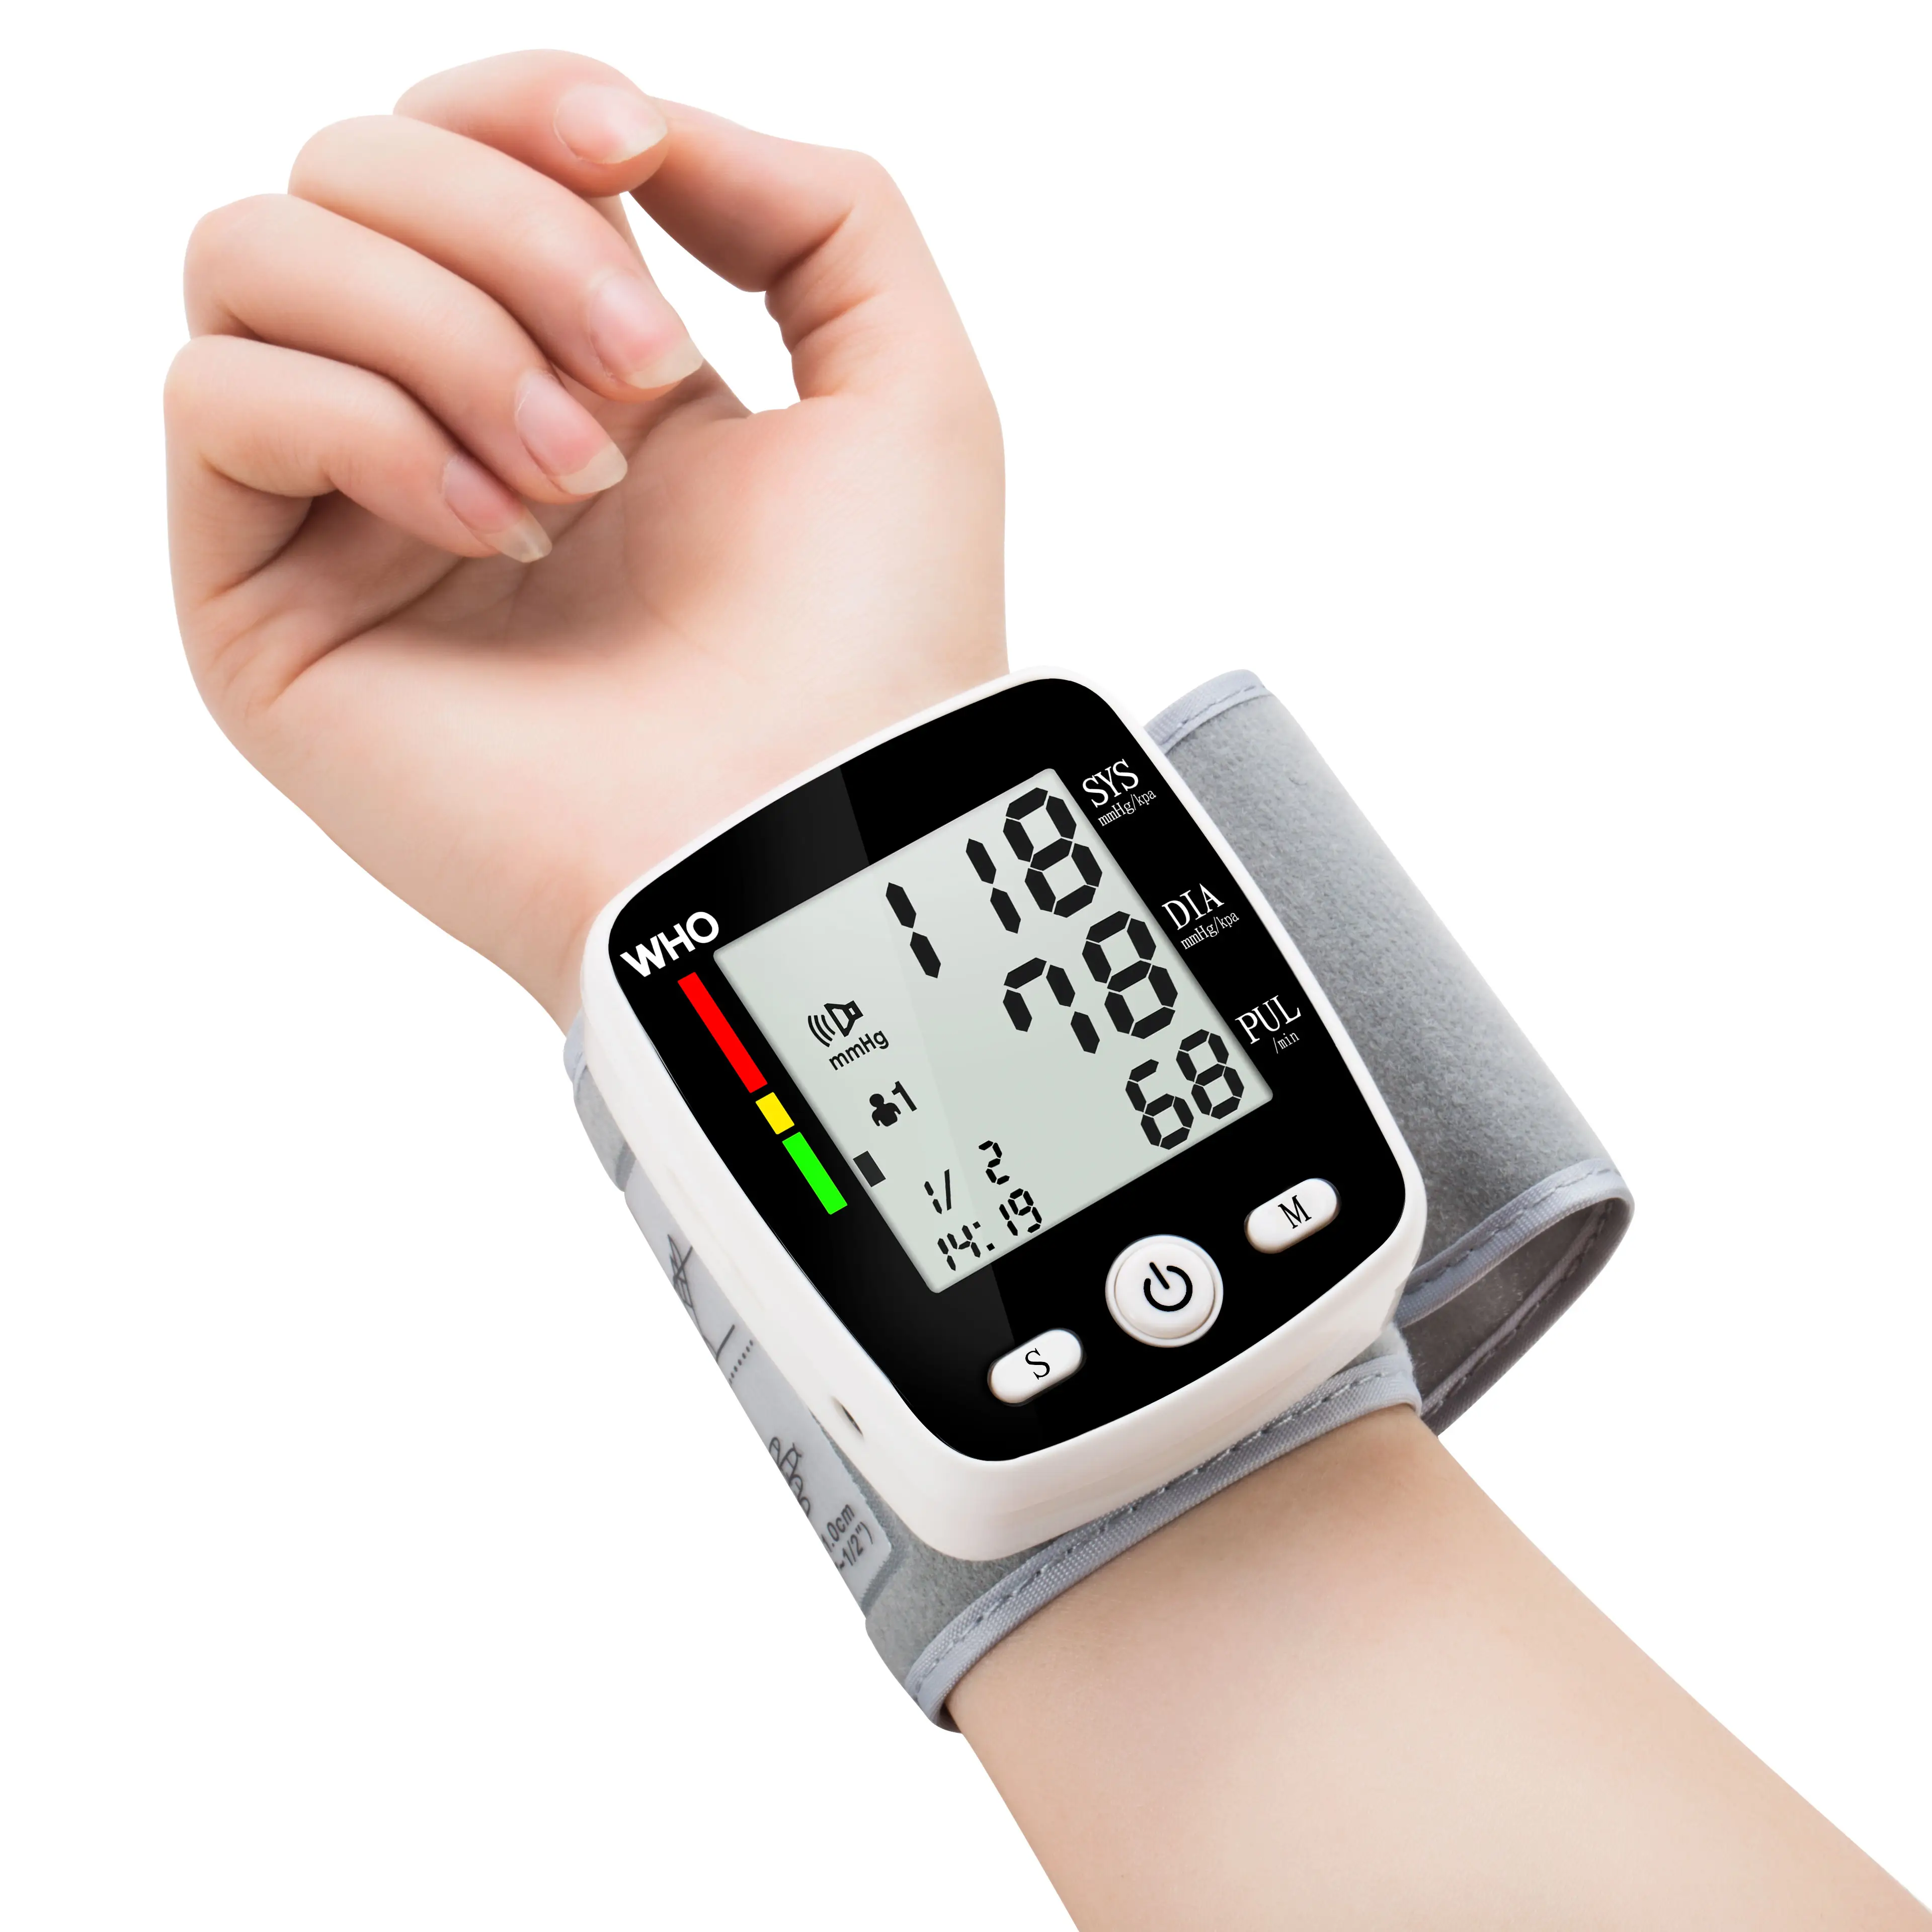 חם וזול מכירת Wholesales אלקטרוני דיגיטלי יד צג לחץ דם